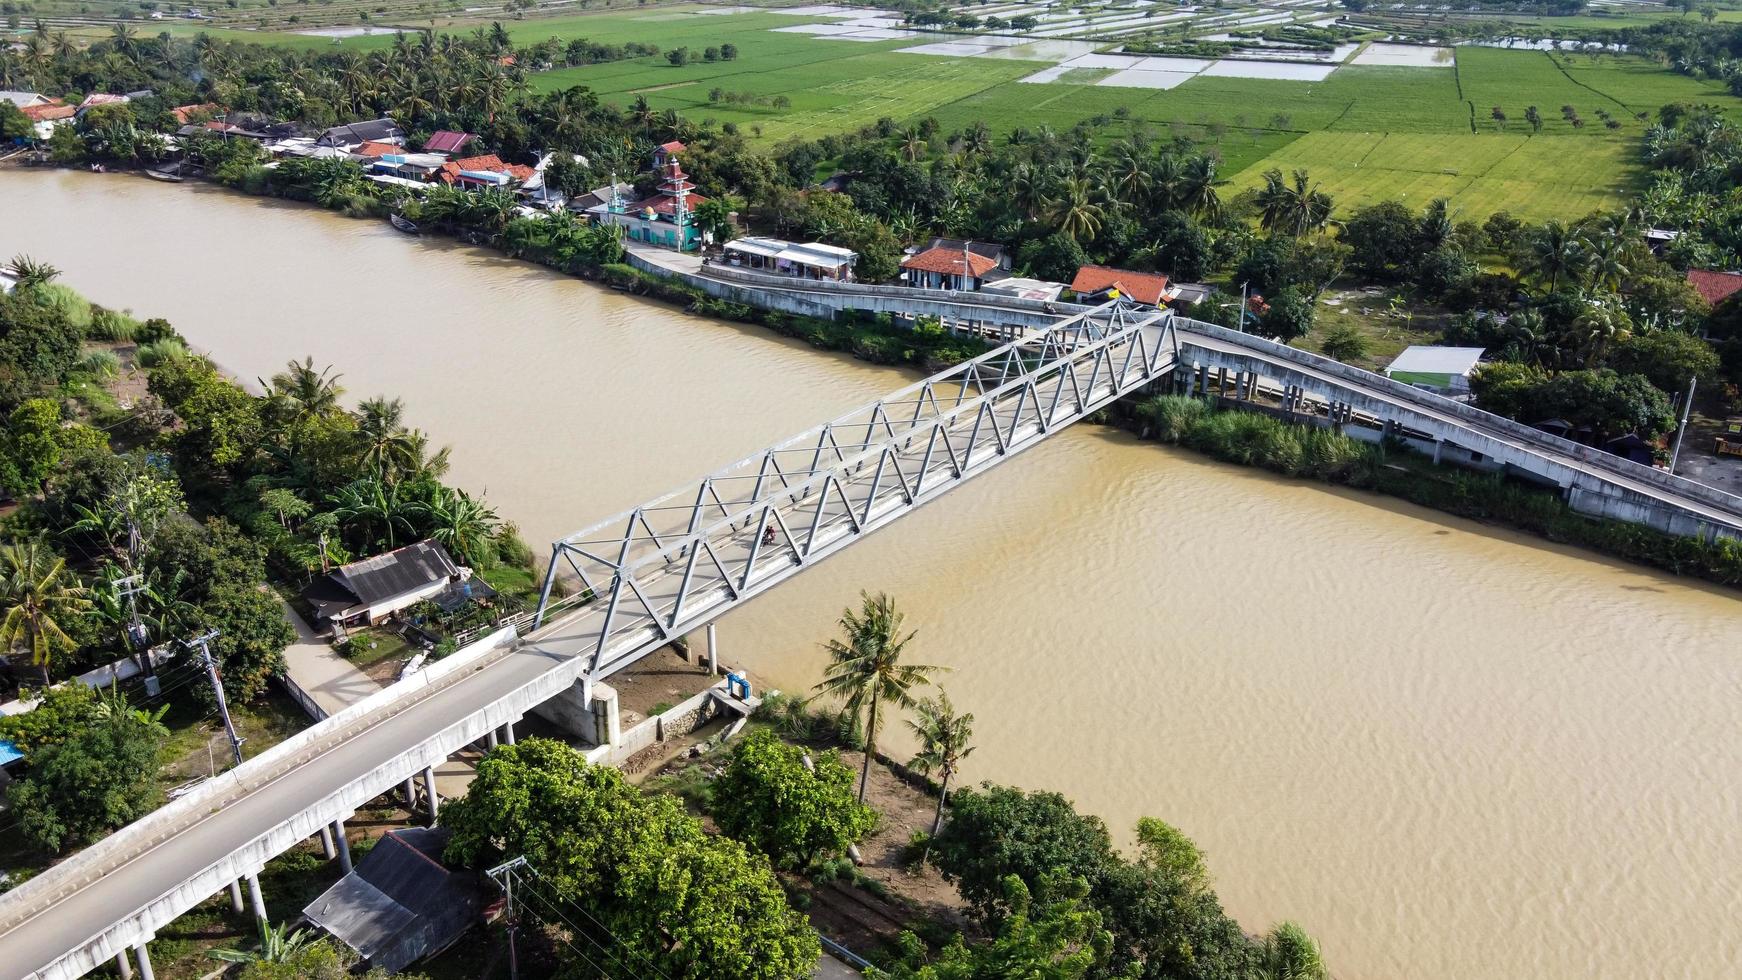 bekasi, indonesia 2021 - veduta aerea con drone di un lungo ponte alla fine del fiume che collega due villaggi foto